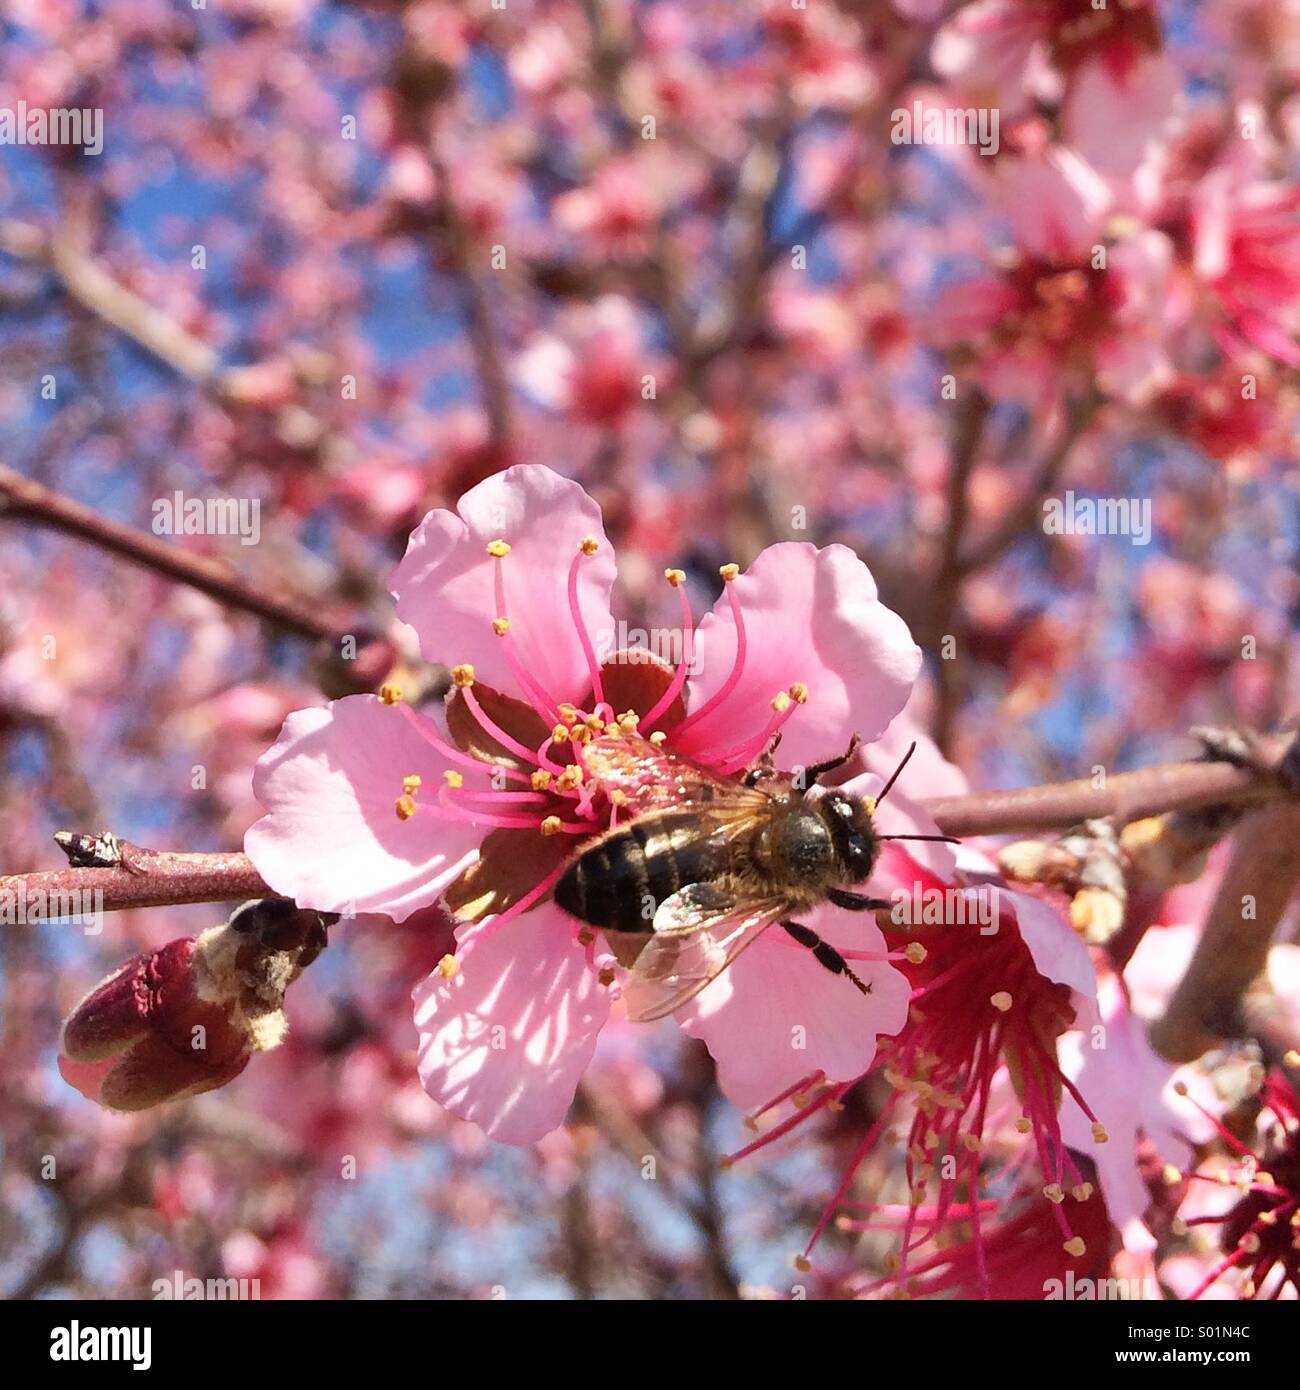 Gros plan d'une abeille sur une fleur d'amande rose dans un jour clair. Banque D'Images